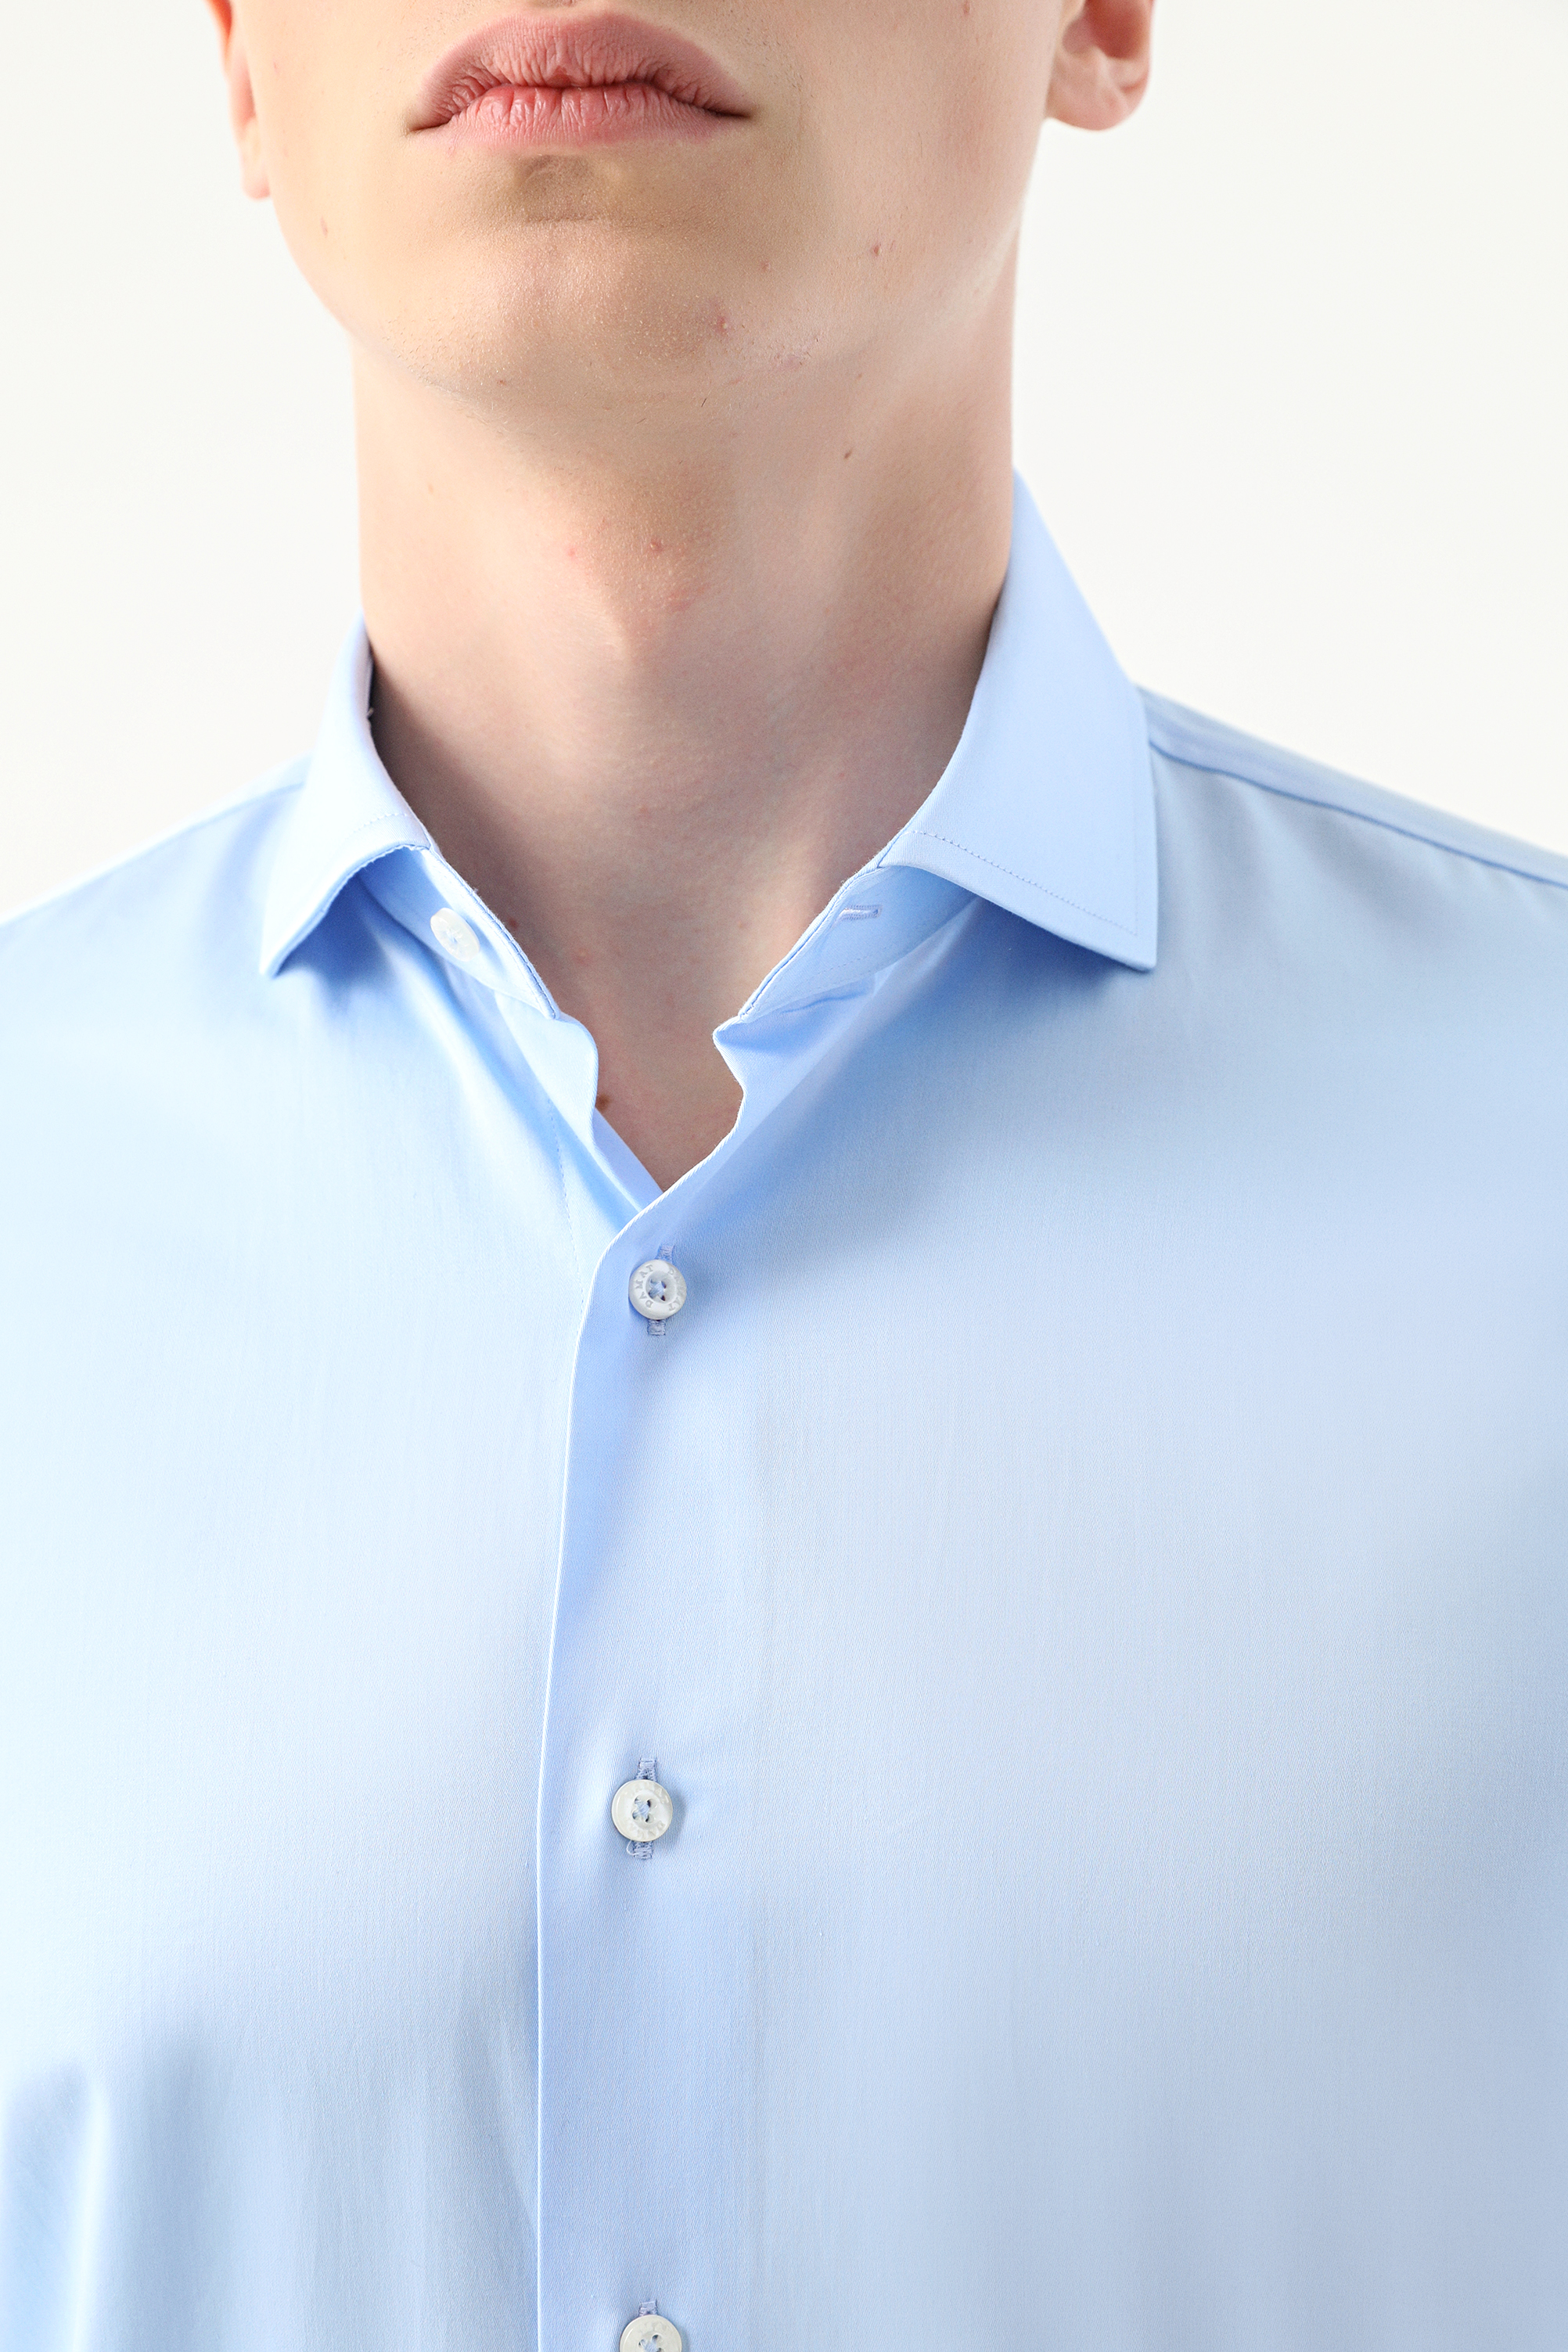 Damat Tween Damat Slim Fit Açık Mavi Düz Nano Care Gömlek. 3